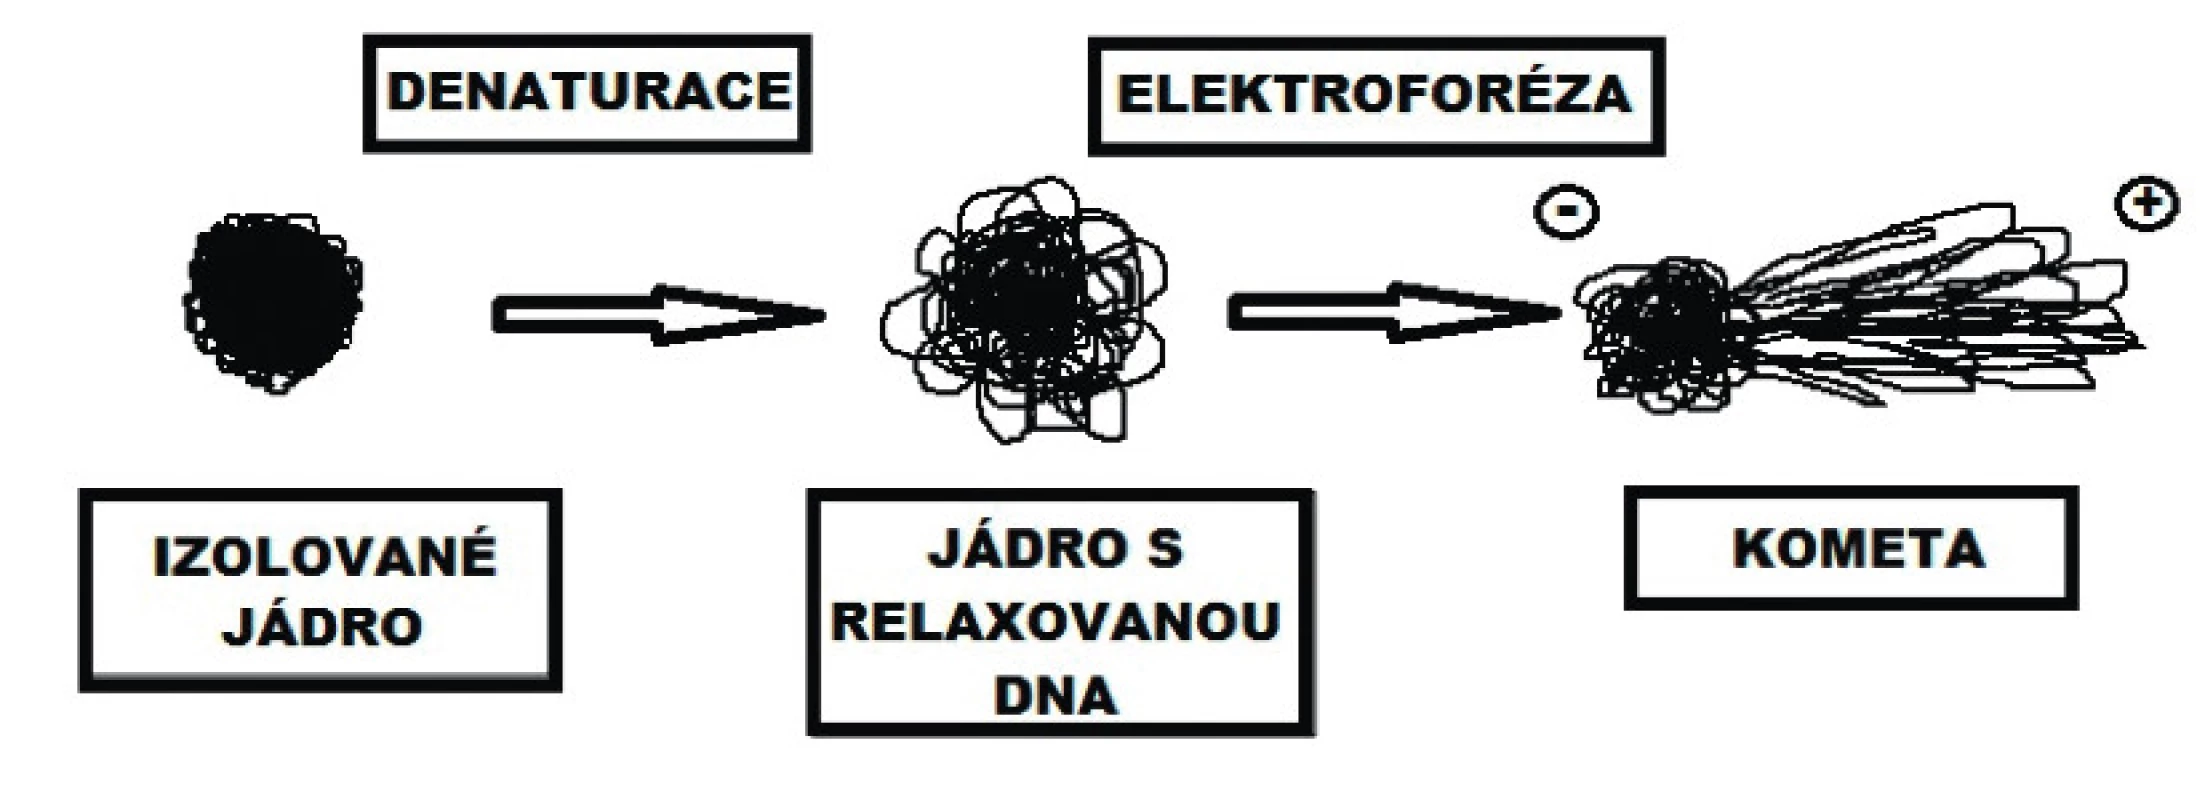 Změny v organizaci DNA po denaturaci (alkalické
rozplétání) a po elektroforéze